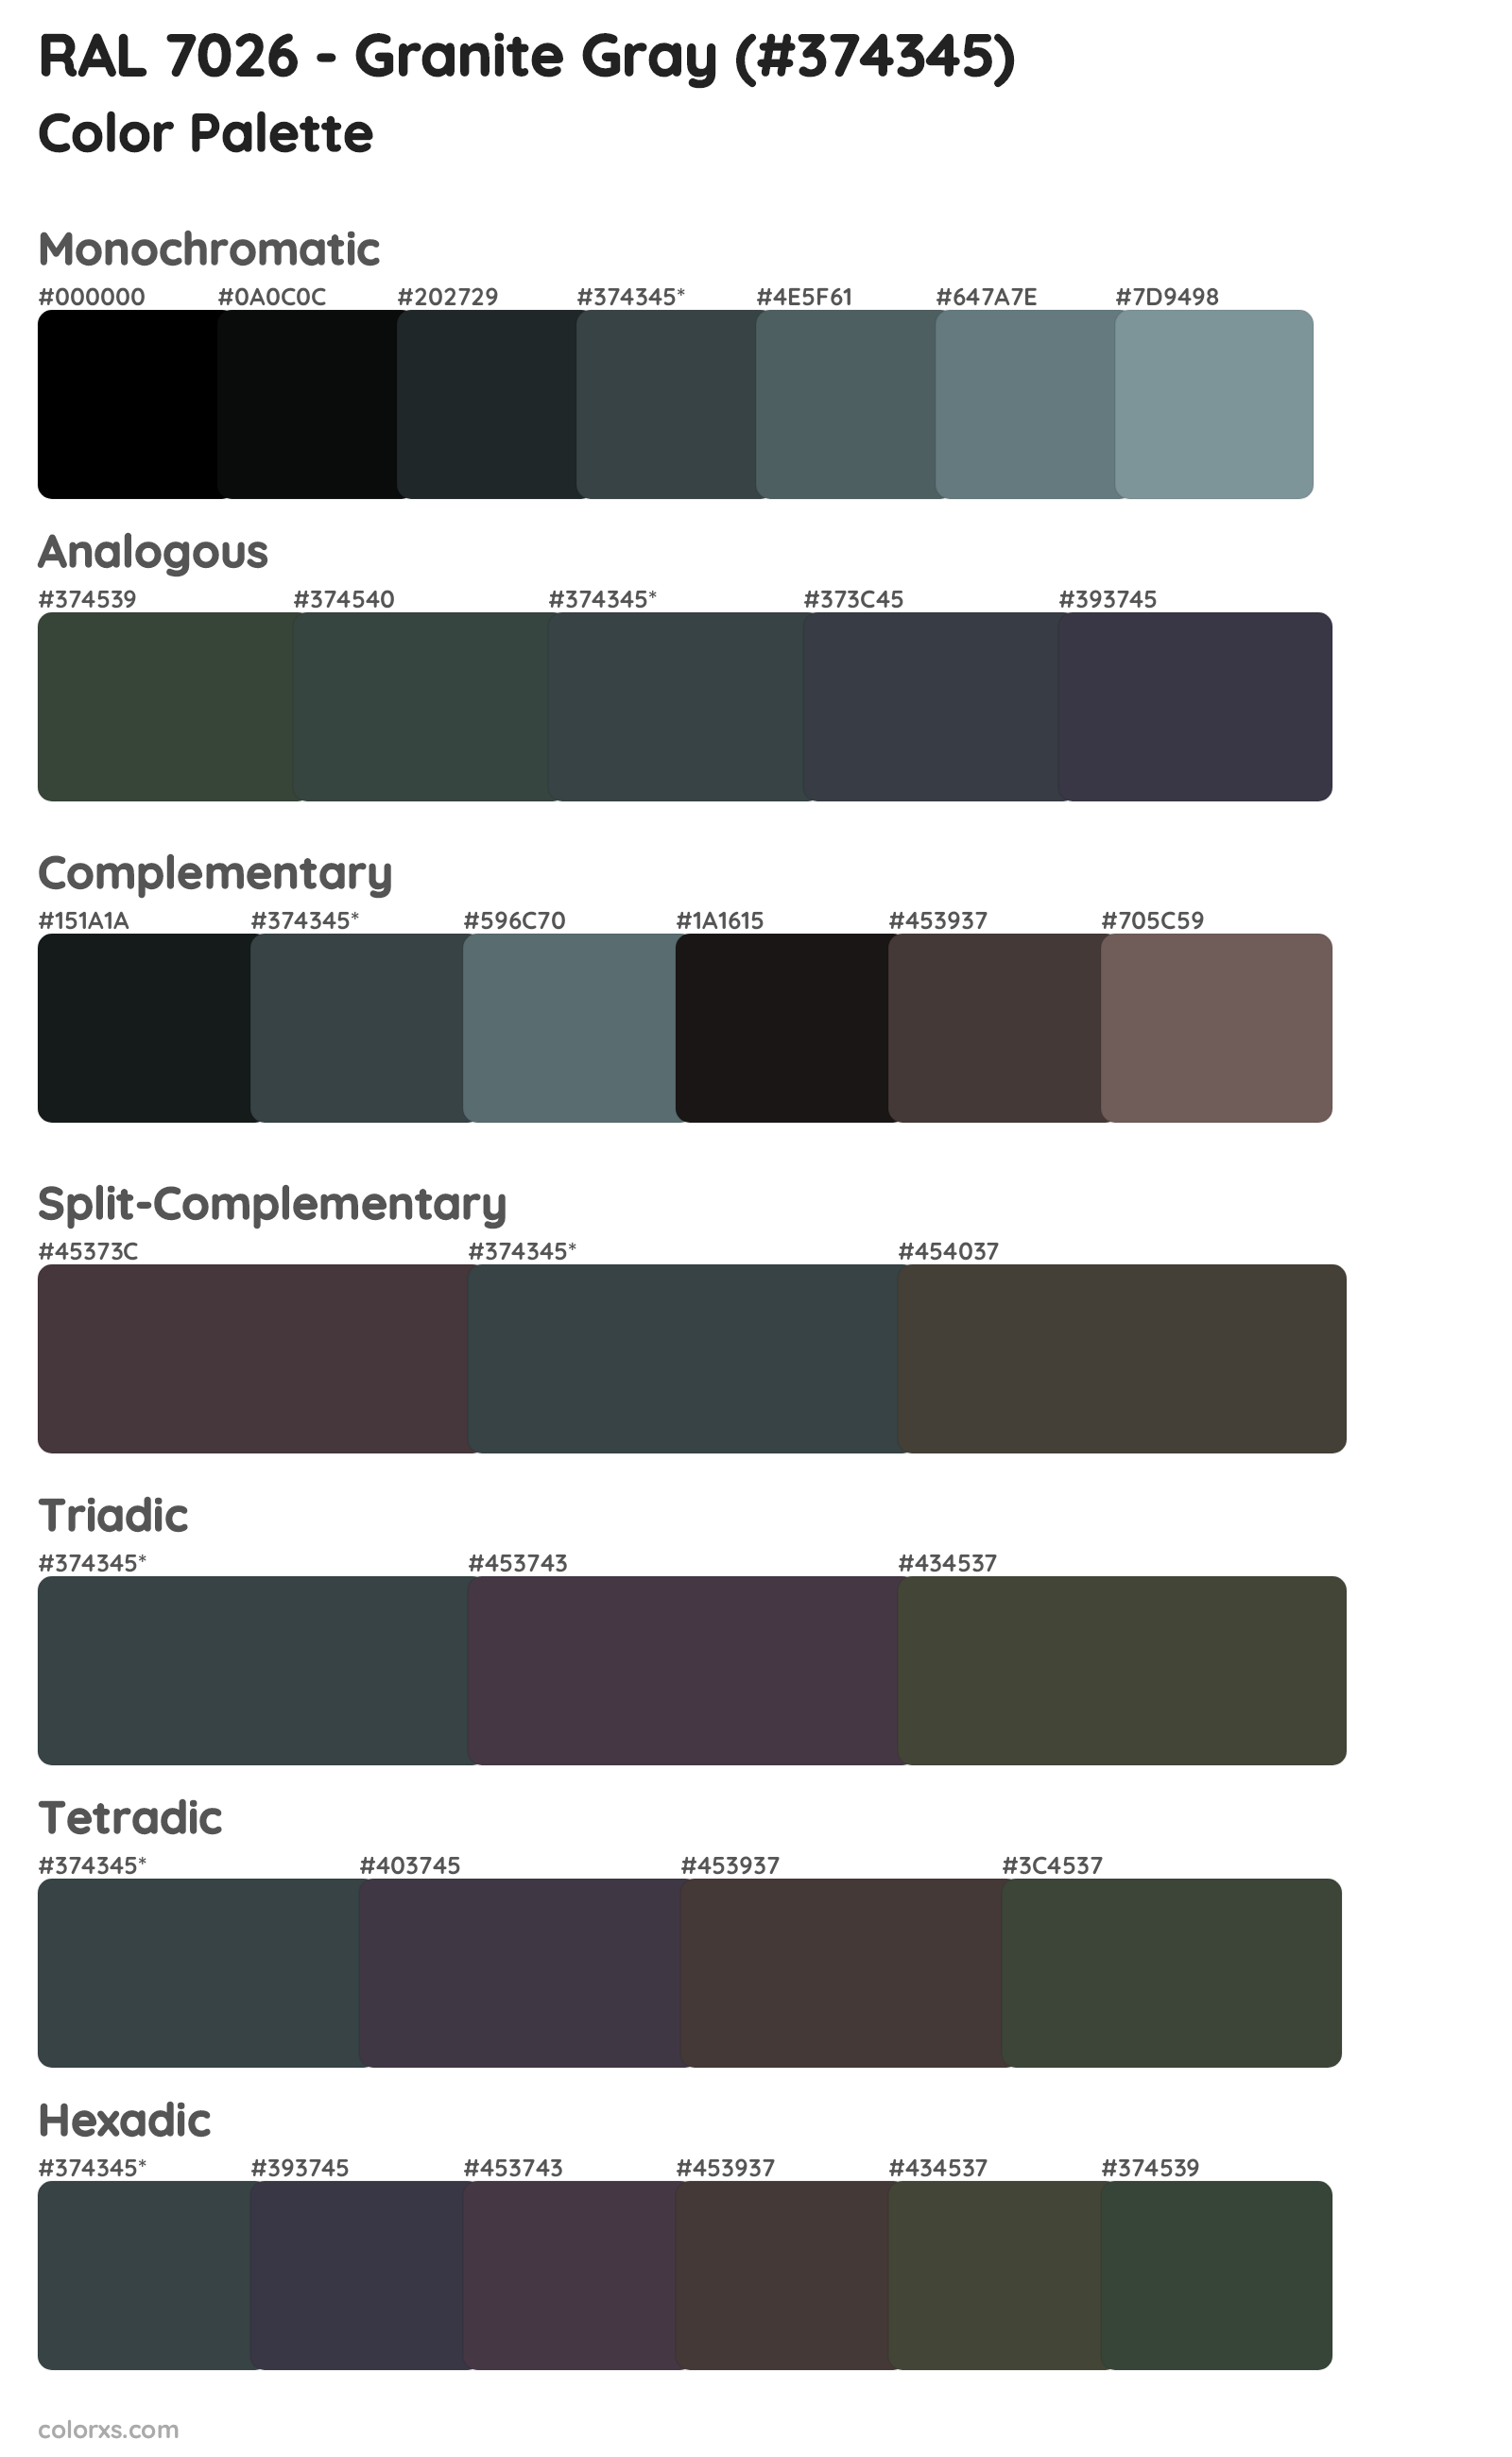 RAL 7026 - Granite Gray Color Scheme Palettes